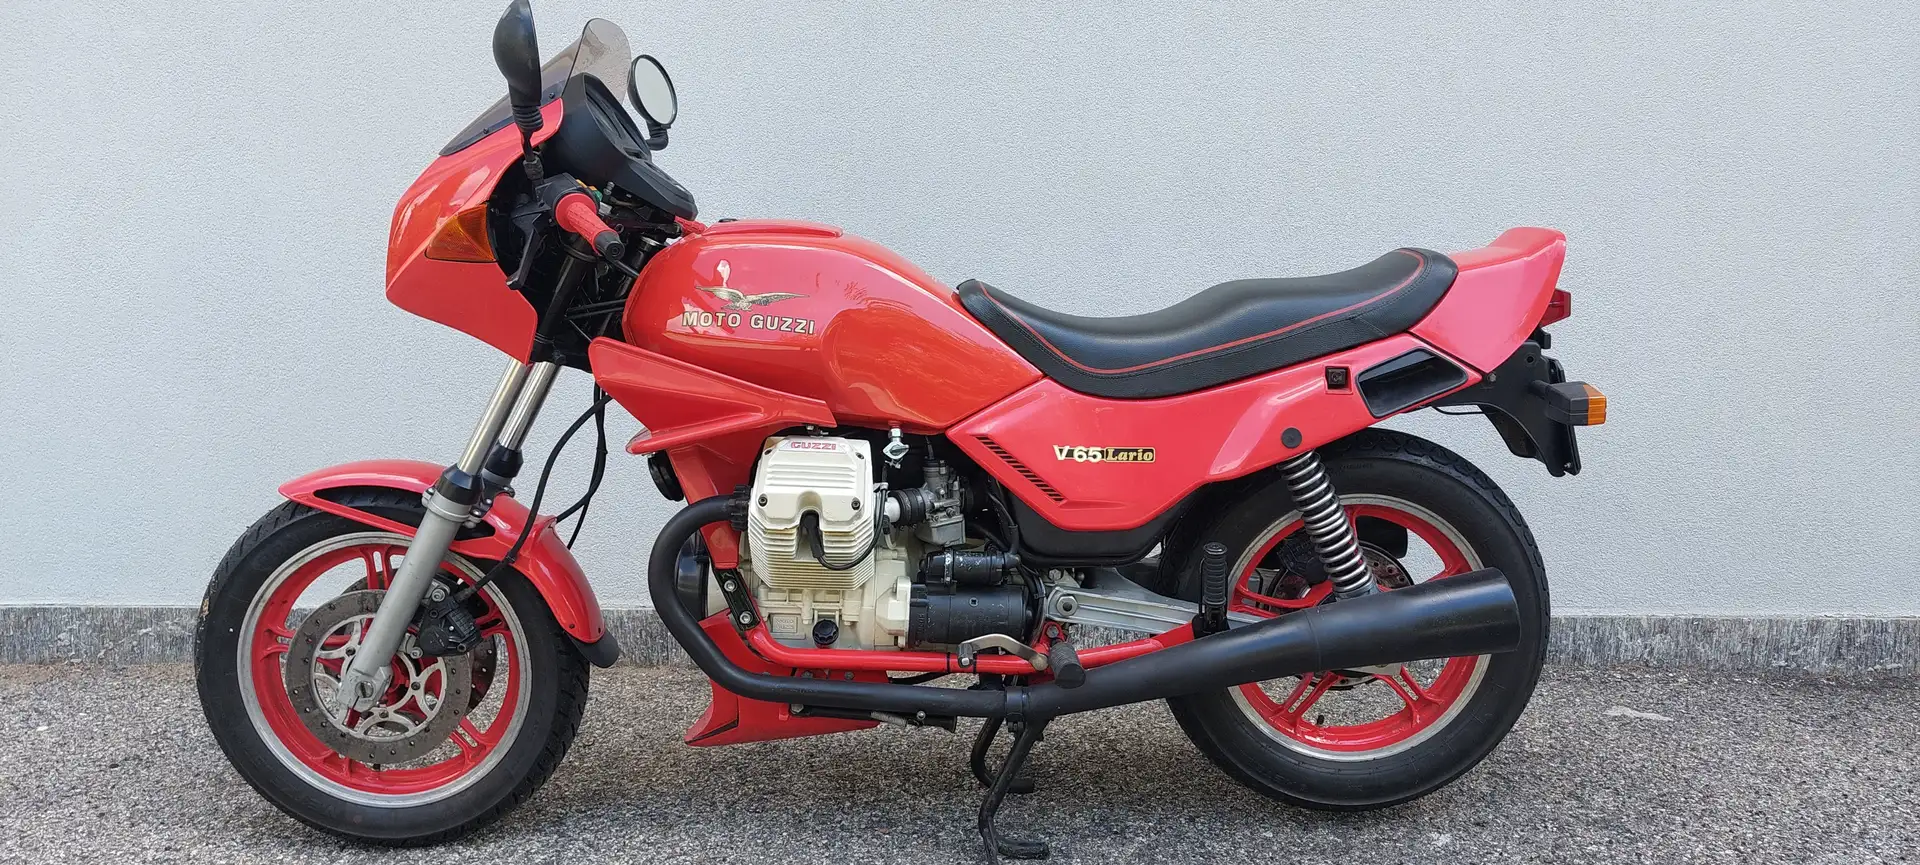 Moto Guzzi V 65 Lario Czerwony - 2